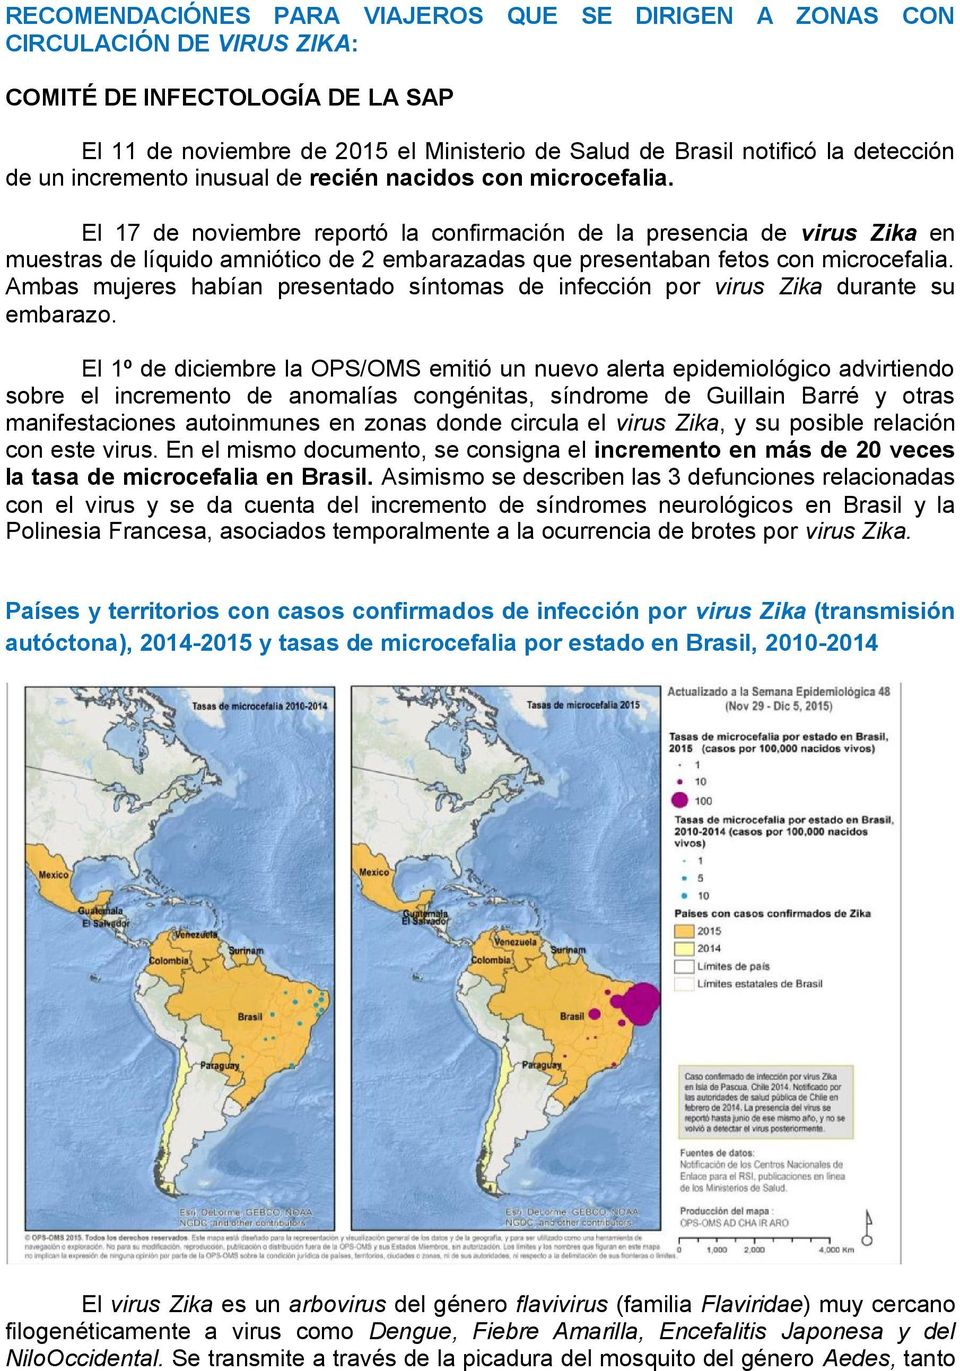 El 17 de noviembre reportó la confirmación de la presencia de virus Zika en muestras de líquido amniótico de 2 embarazadas que presentaban fetos con microcefalia.